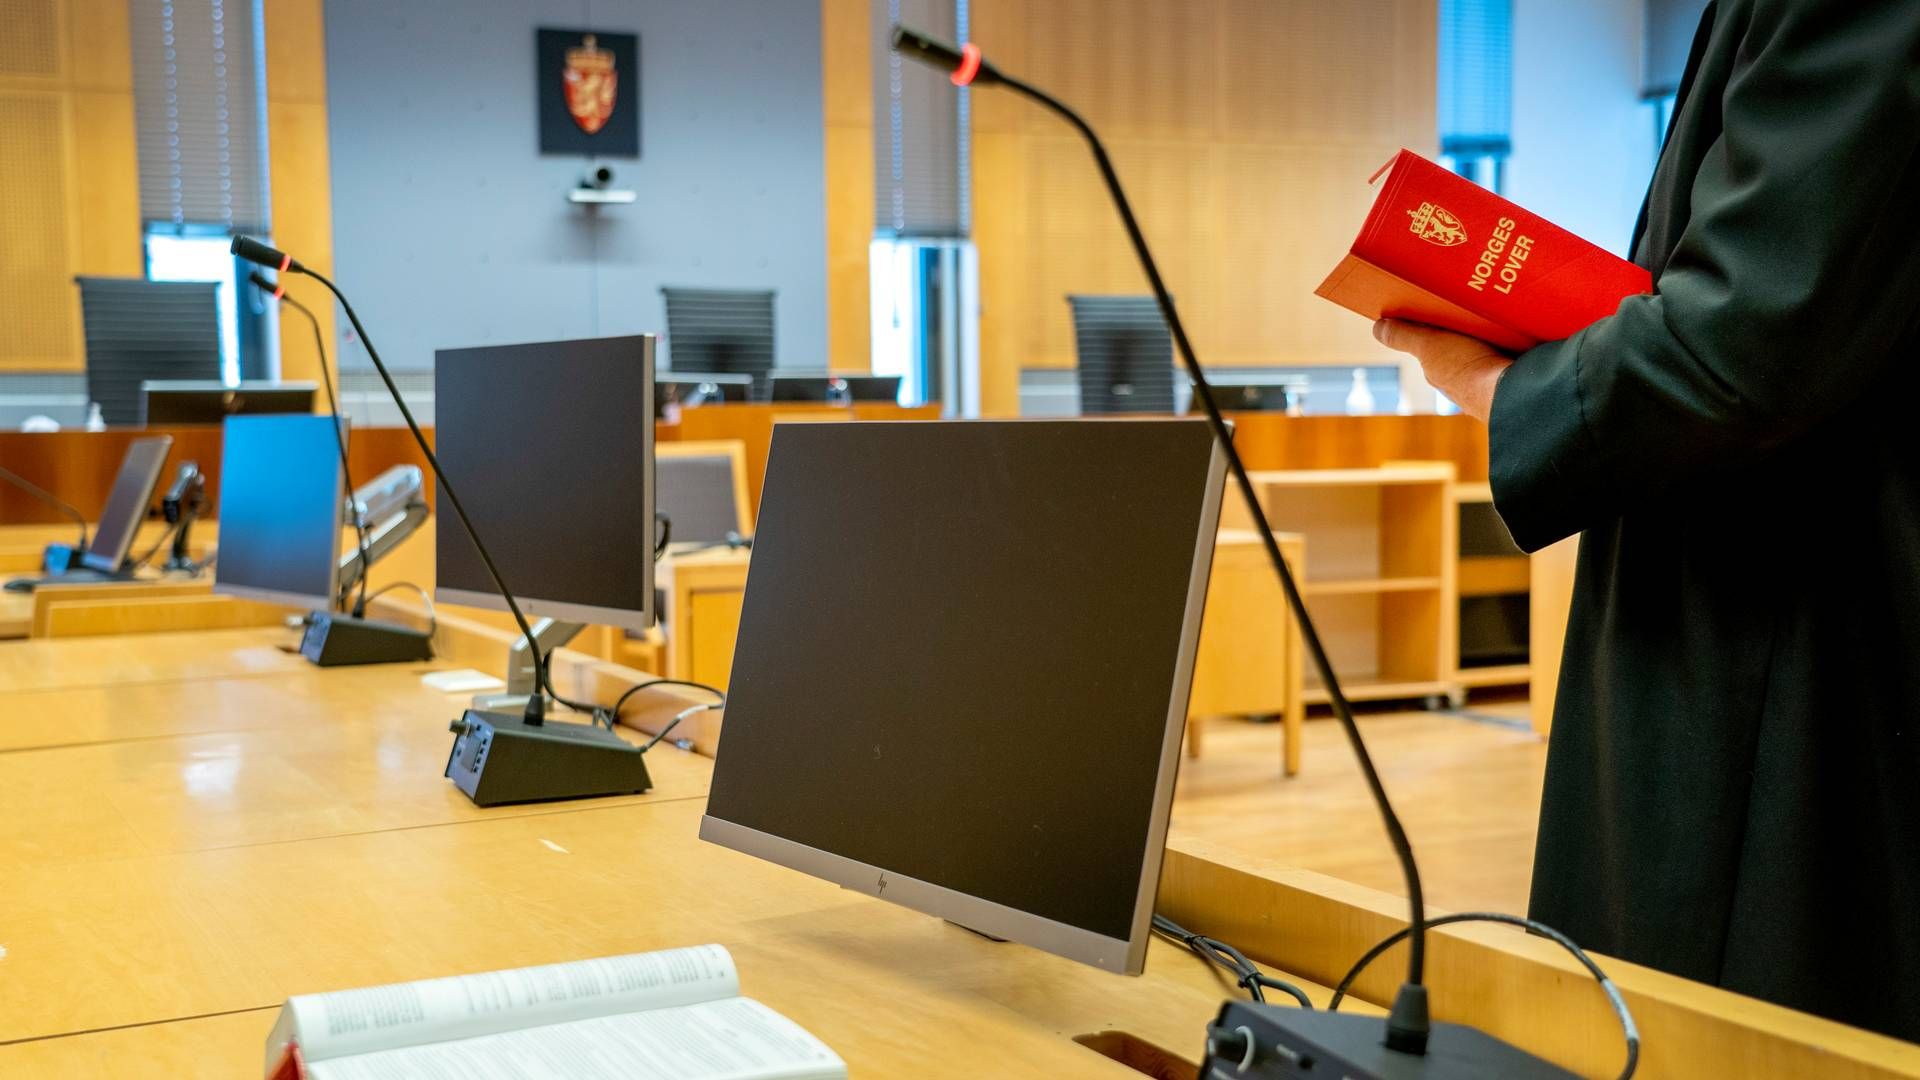 UTSATT: Saken mot Furuholmen Dietrichson er utsatt. | Foto: Gorm Kallestad/NTB